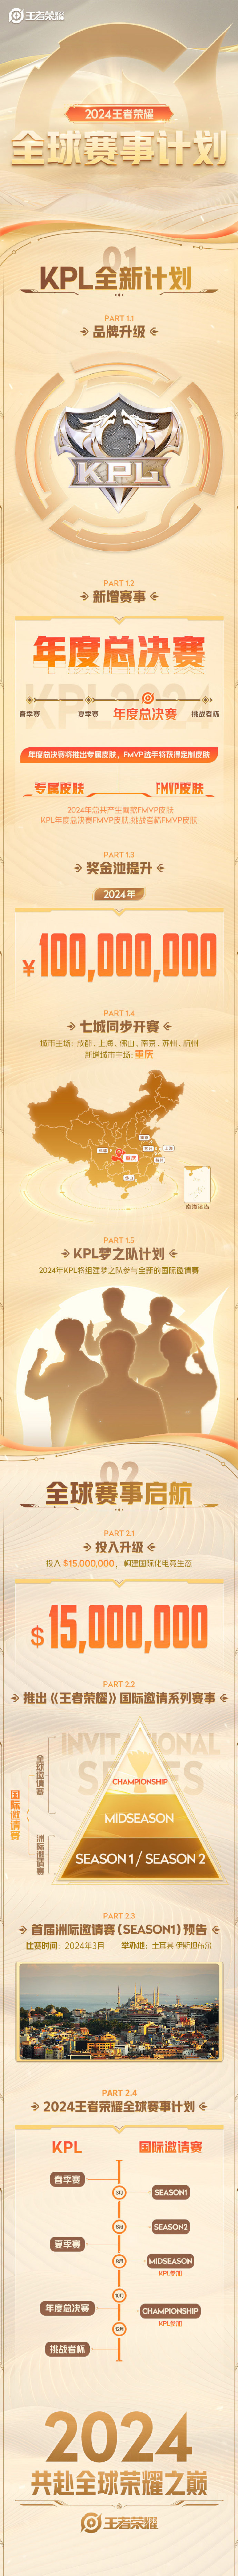 《王者榮耀》新增KPL年度總決賽 獎金池1億人民幣